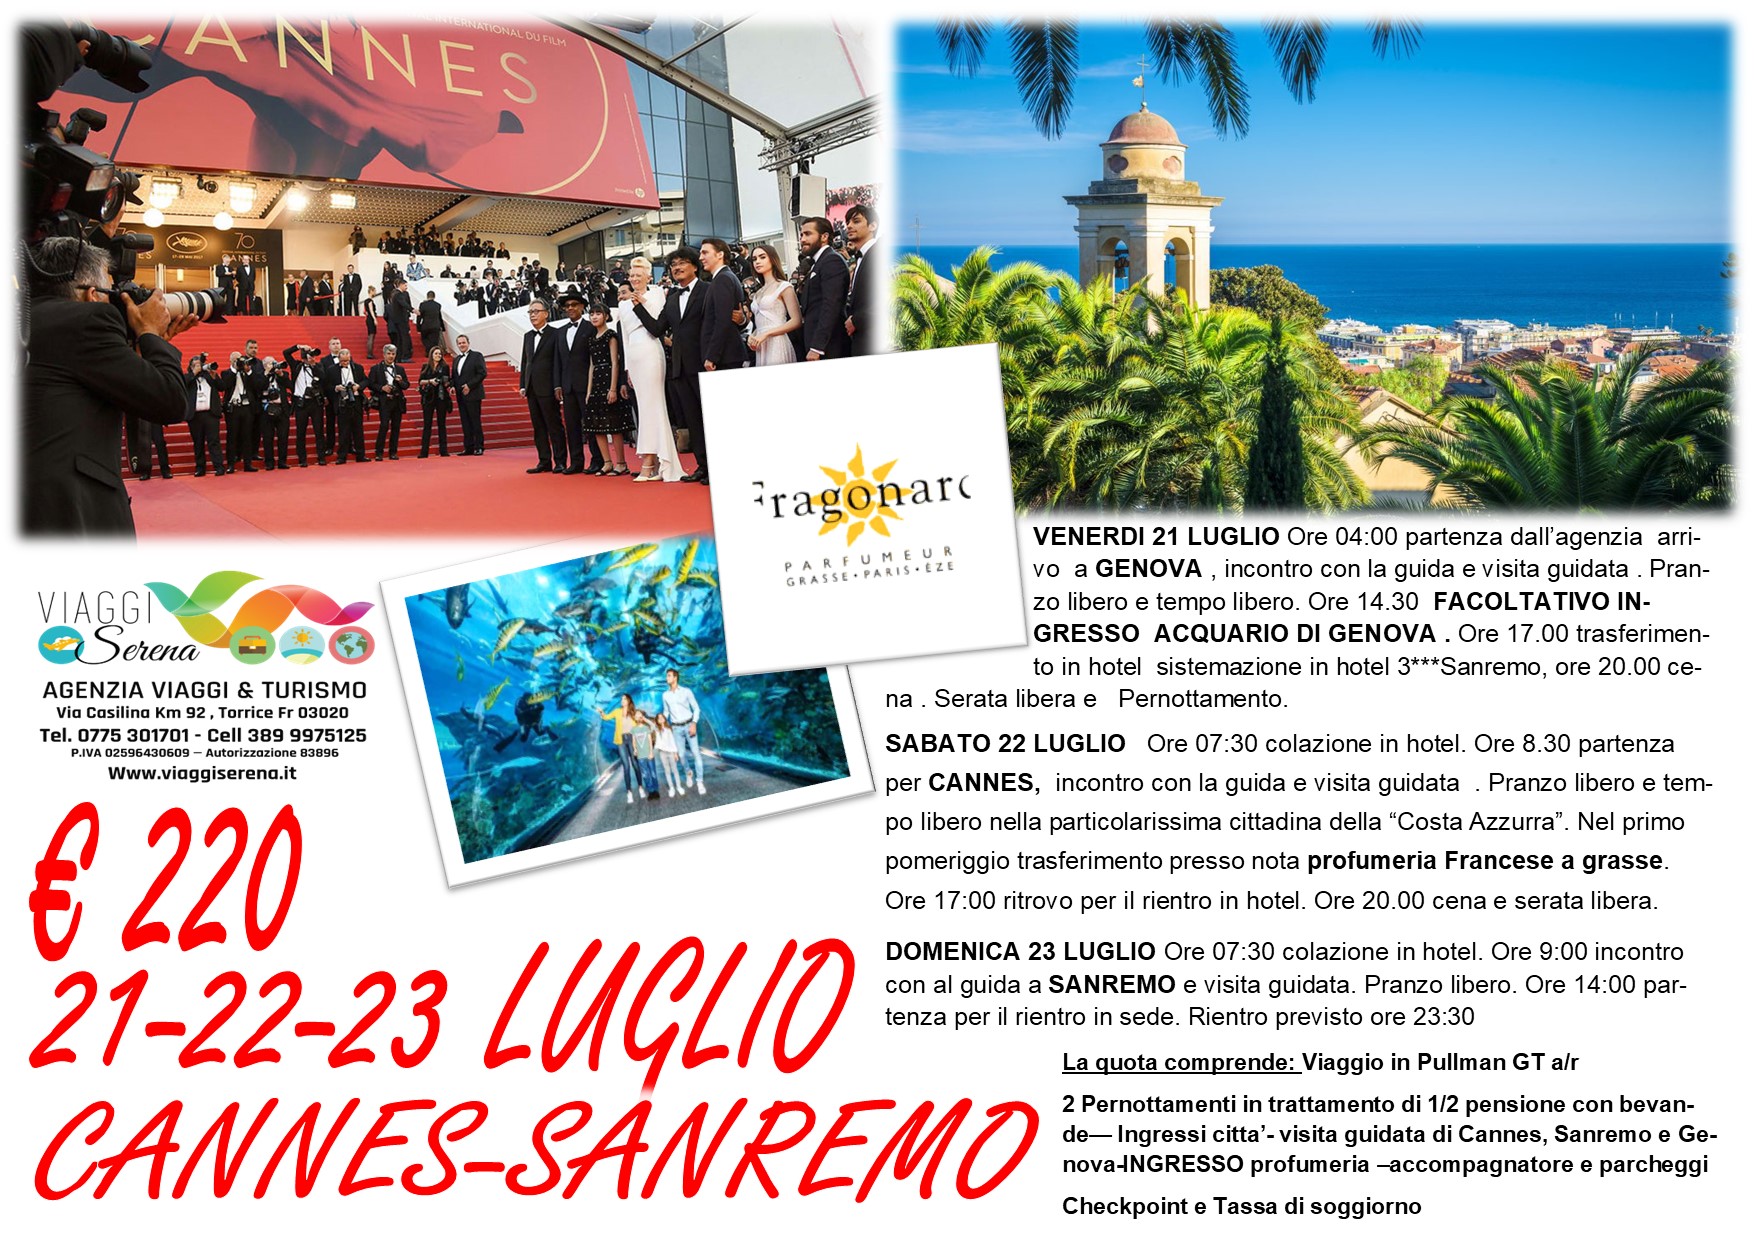 Viaggi di gruppo: Cannes, Sanremo & Genova 21-22-23 Luglio €220,00